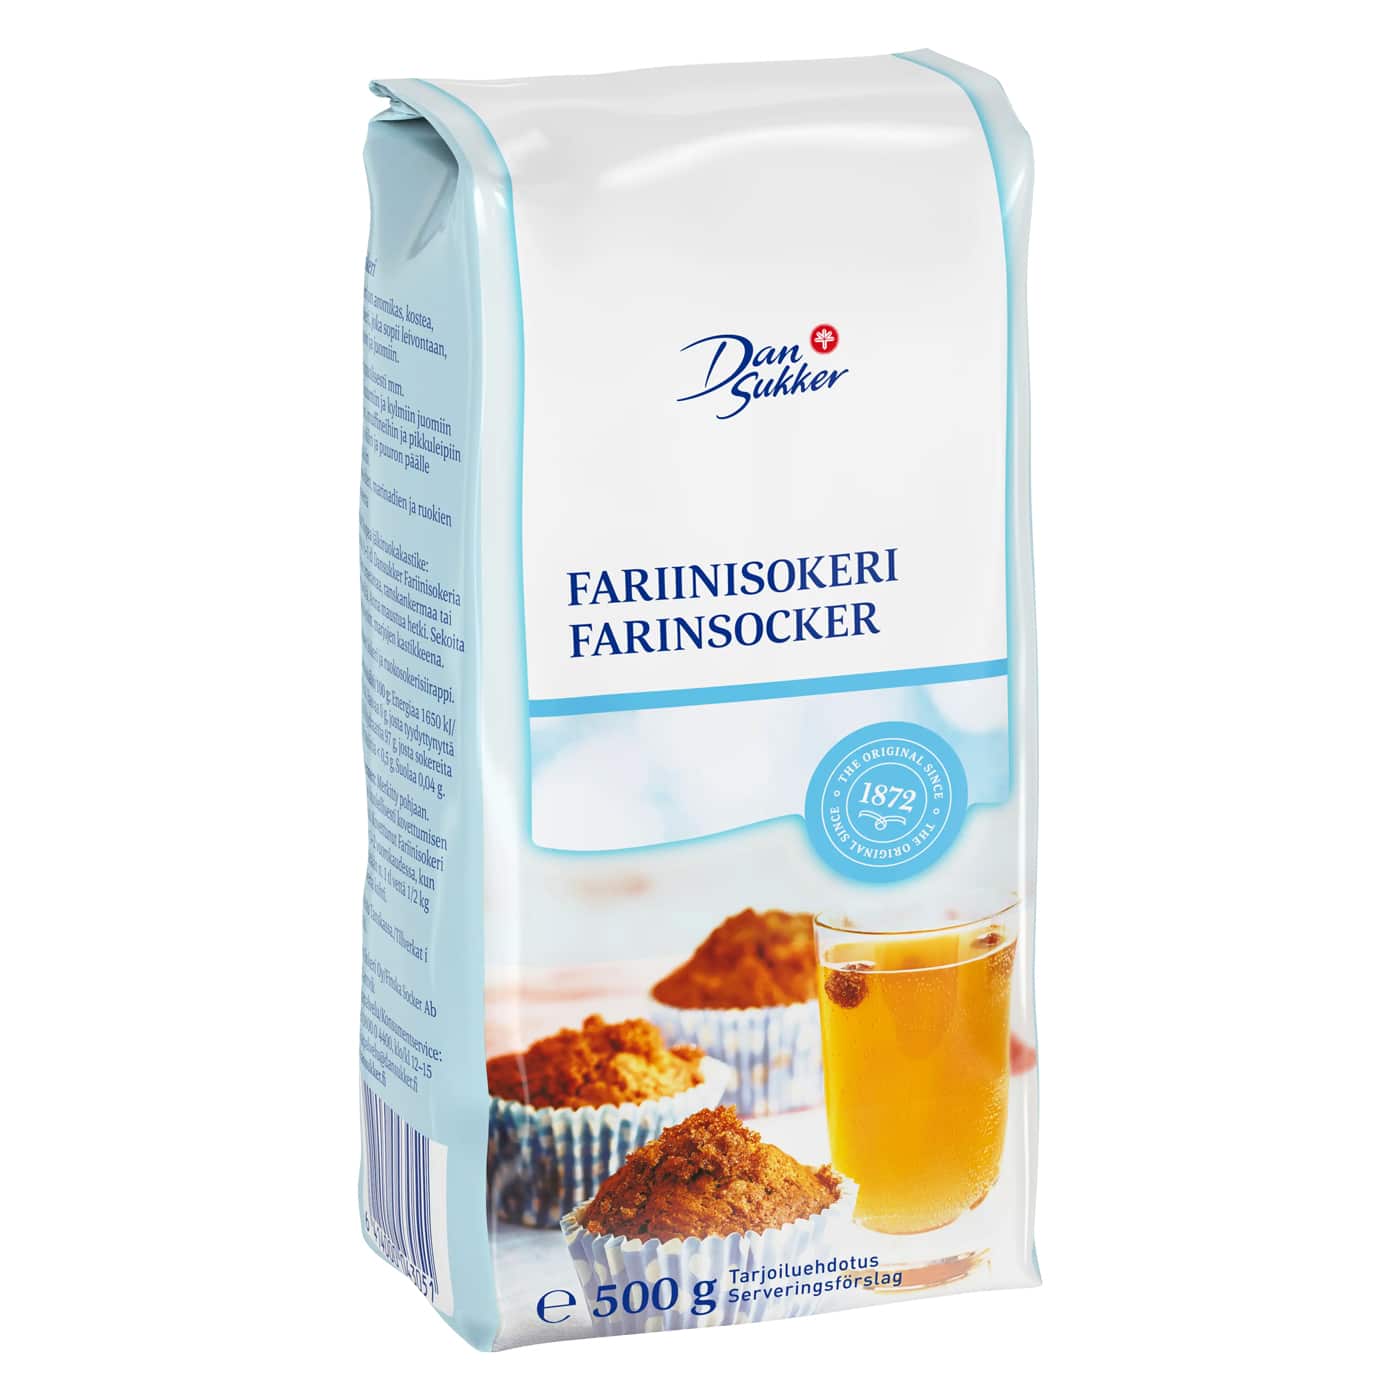 Farinzucker kaufen was ist das fariinisokeri dansukker finnland dänermark